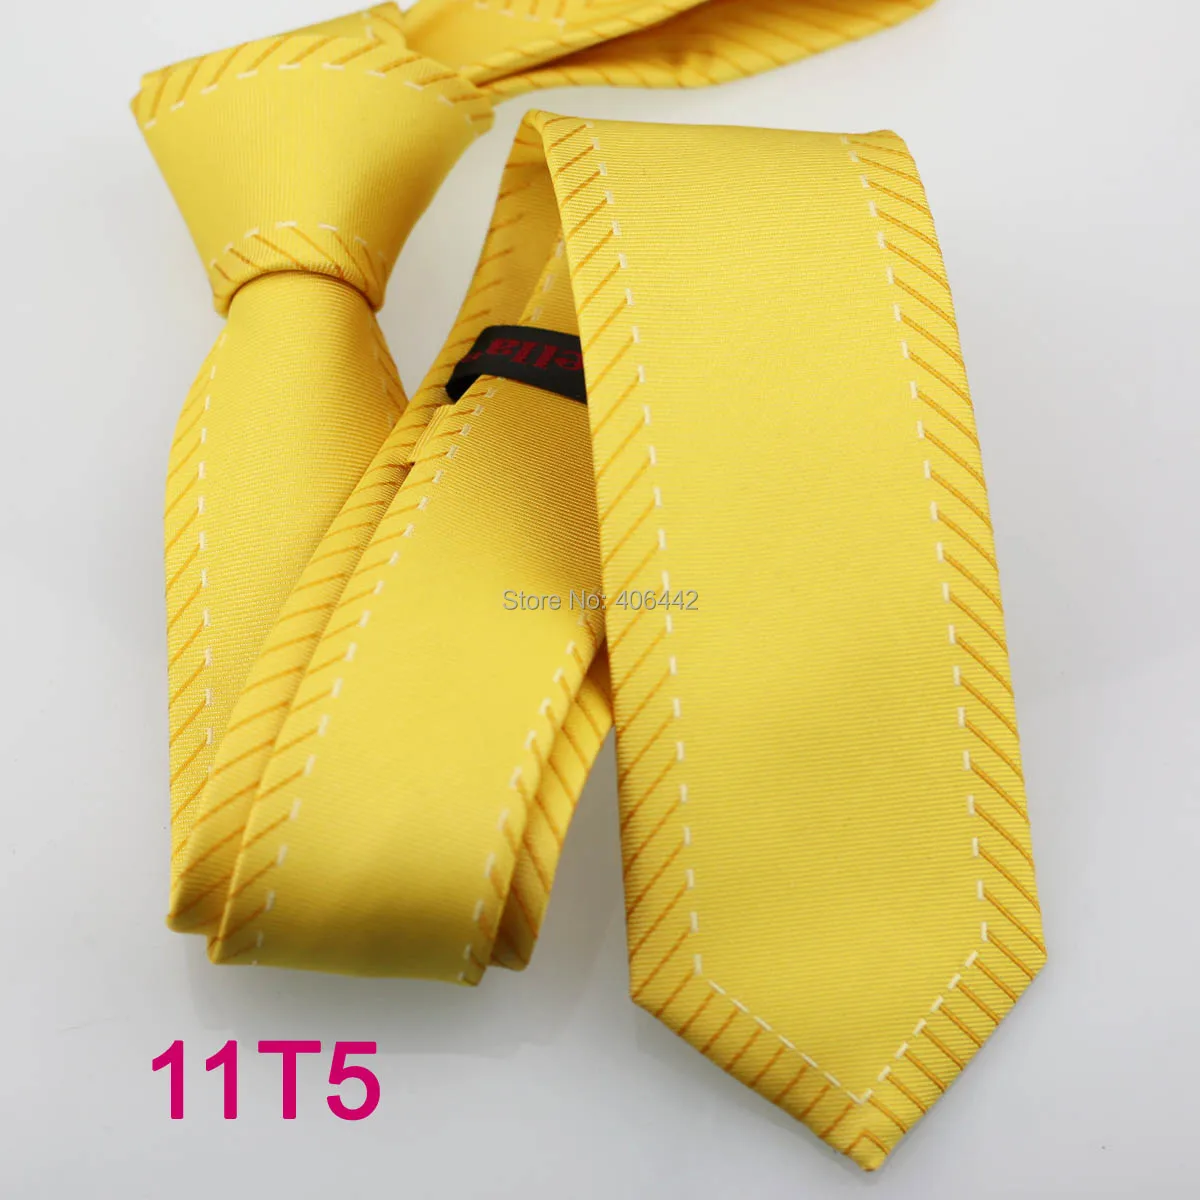 YIBEI coahella ties мужской тонкий галстук золотой желтый с белой каймой полосы Тонкий галстук узкий галстук Модный Галстук Свадьба Gravata